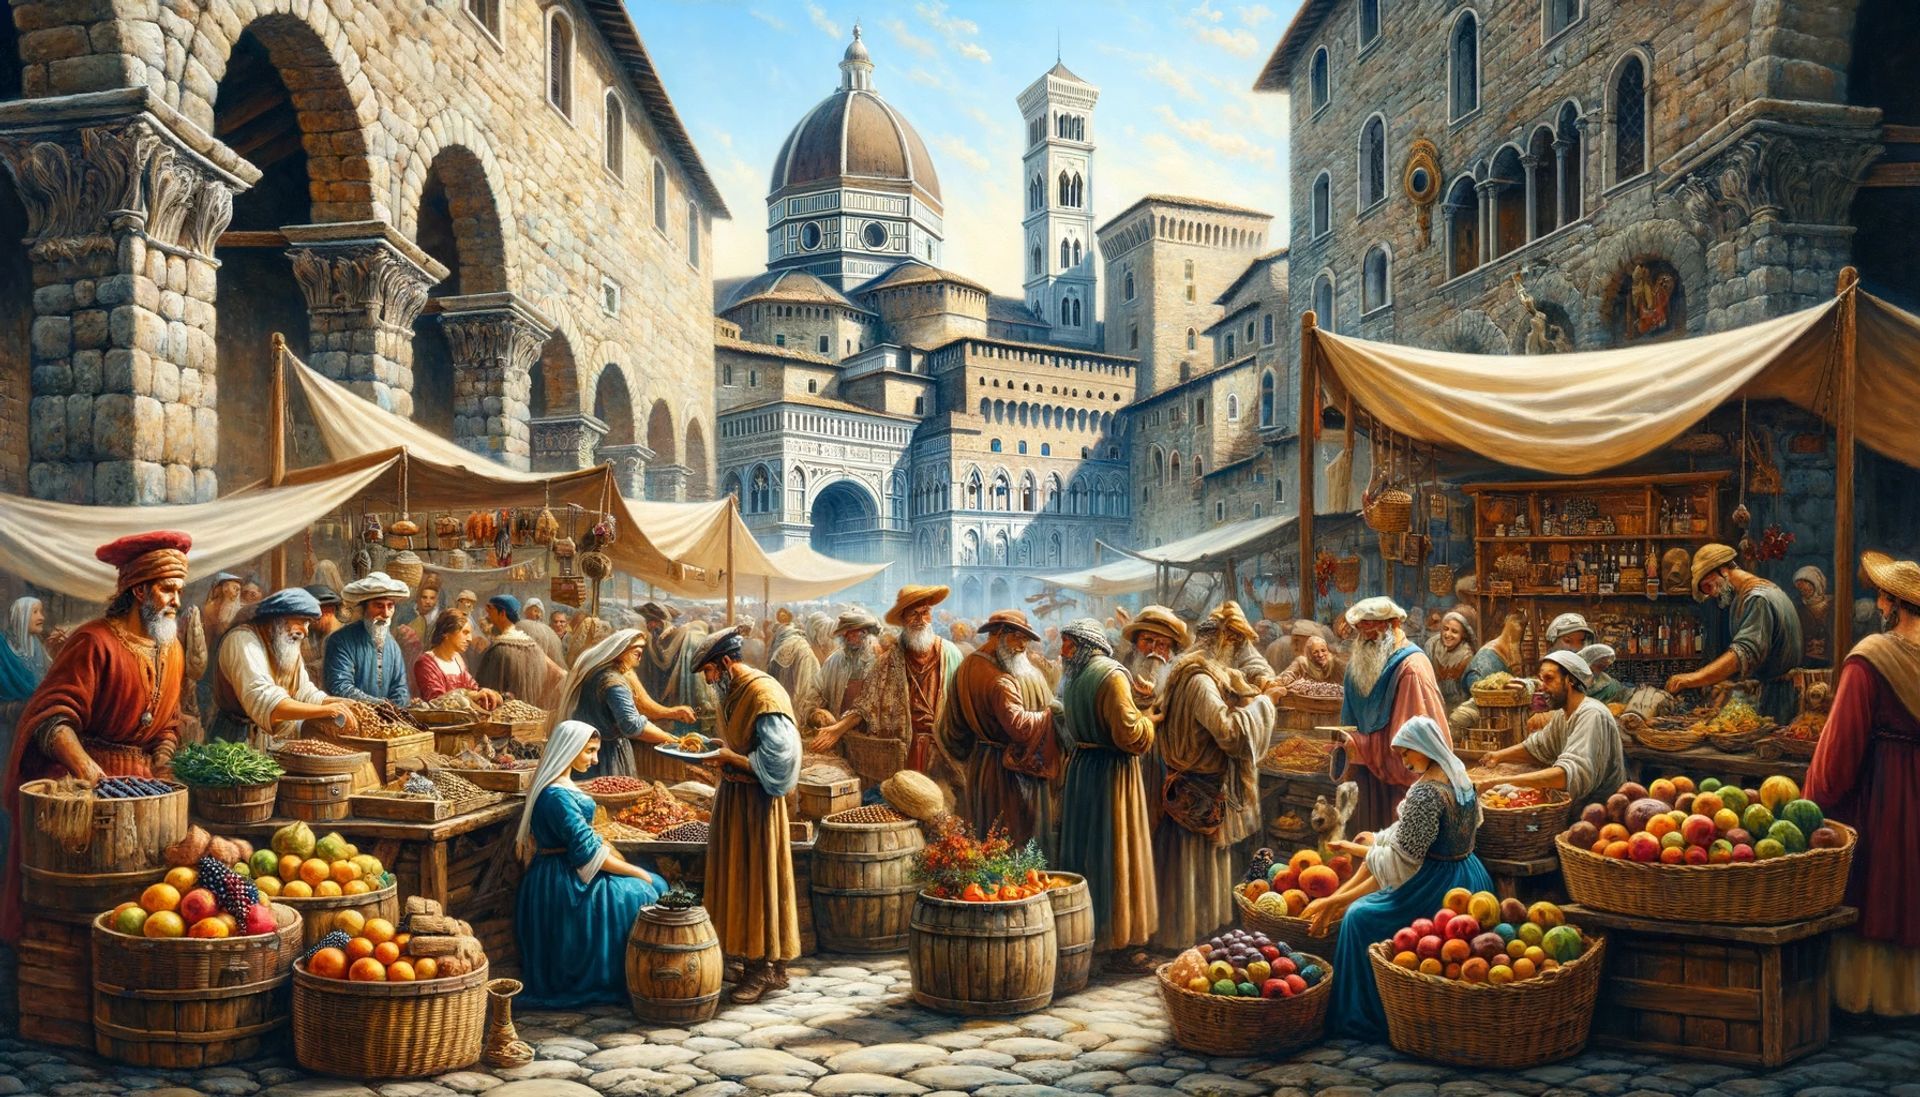 Um vibrante mercado medieval genovês, onde mercadores vendiam especiarias das Índias Orientais e vários outros produtos.